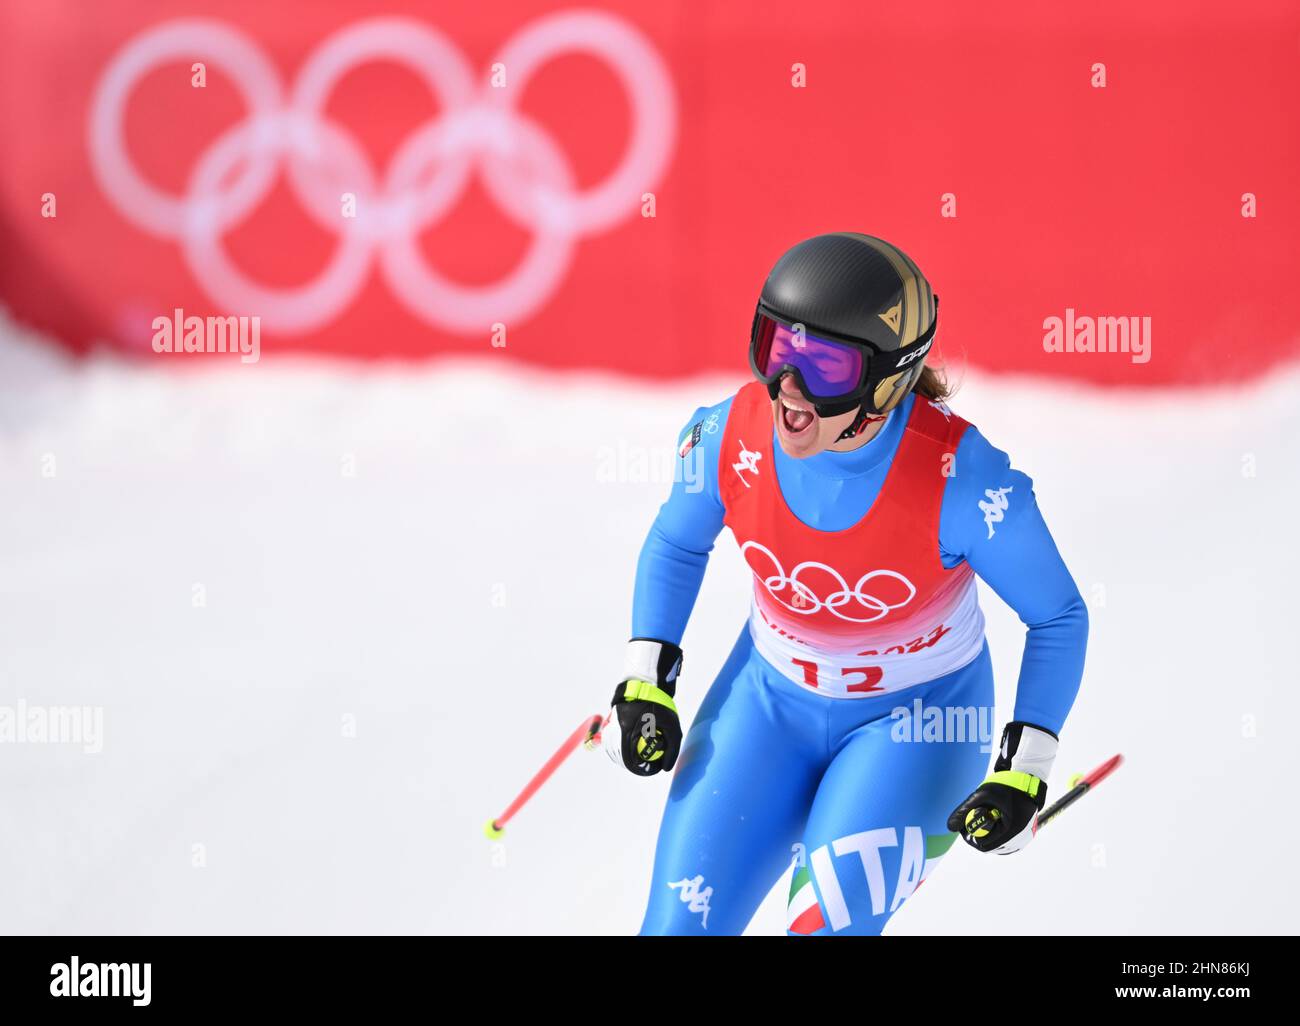 Sofia Goggia aus Italien reagiert am 11. Tag der Olympischen Winterspiele 2022 in Peking im Nationalen Alpinen Ski-Zentrum in Peking, China, im Ziel. Bilddatum: Dienstag, 15. Februar 2022. Stockfoto